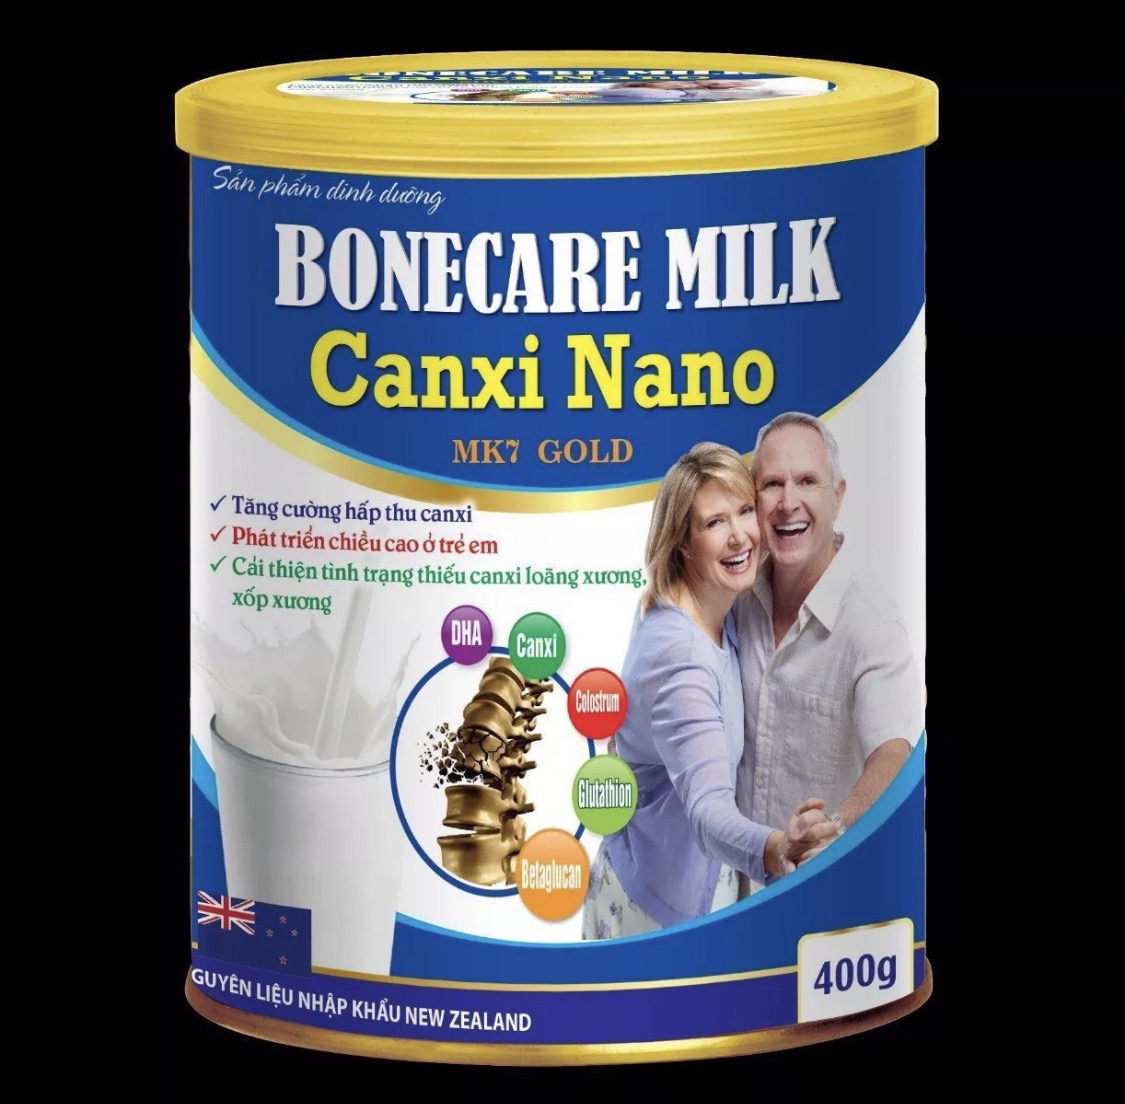 Sữa Bột Tăng Chiều Cao Bonecare Milk Canxi Nano MK7 Gold thumbnail